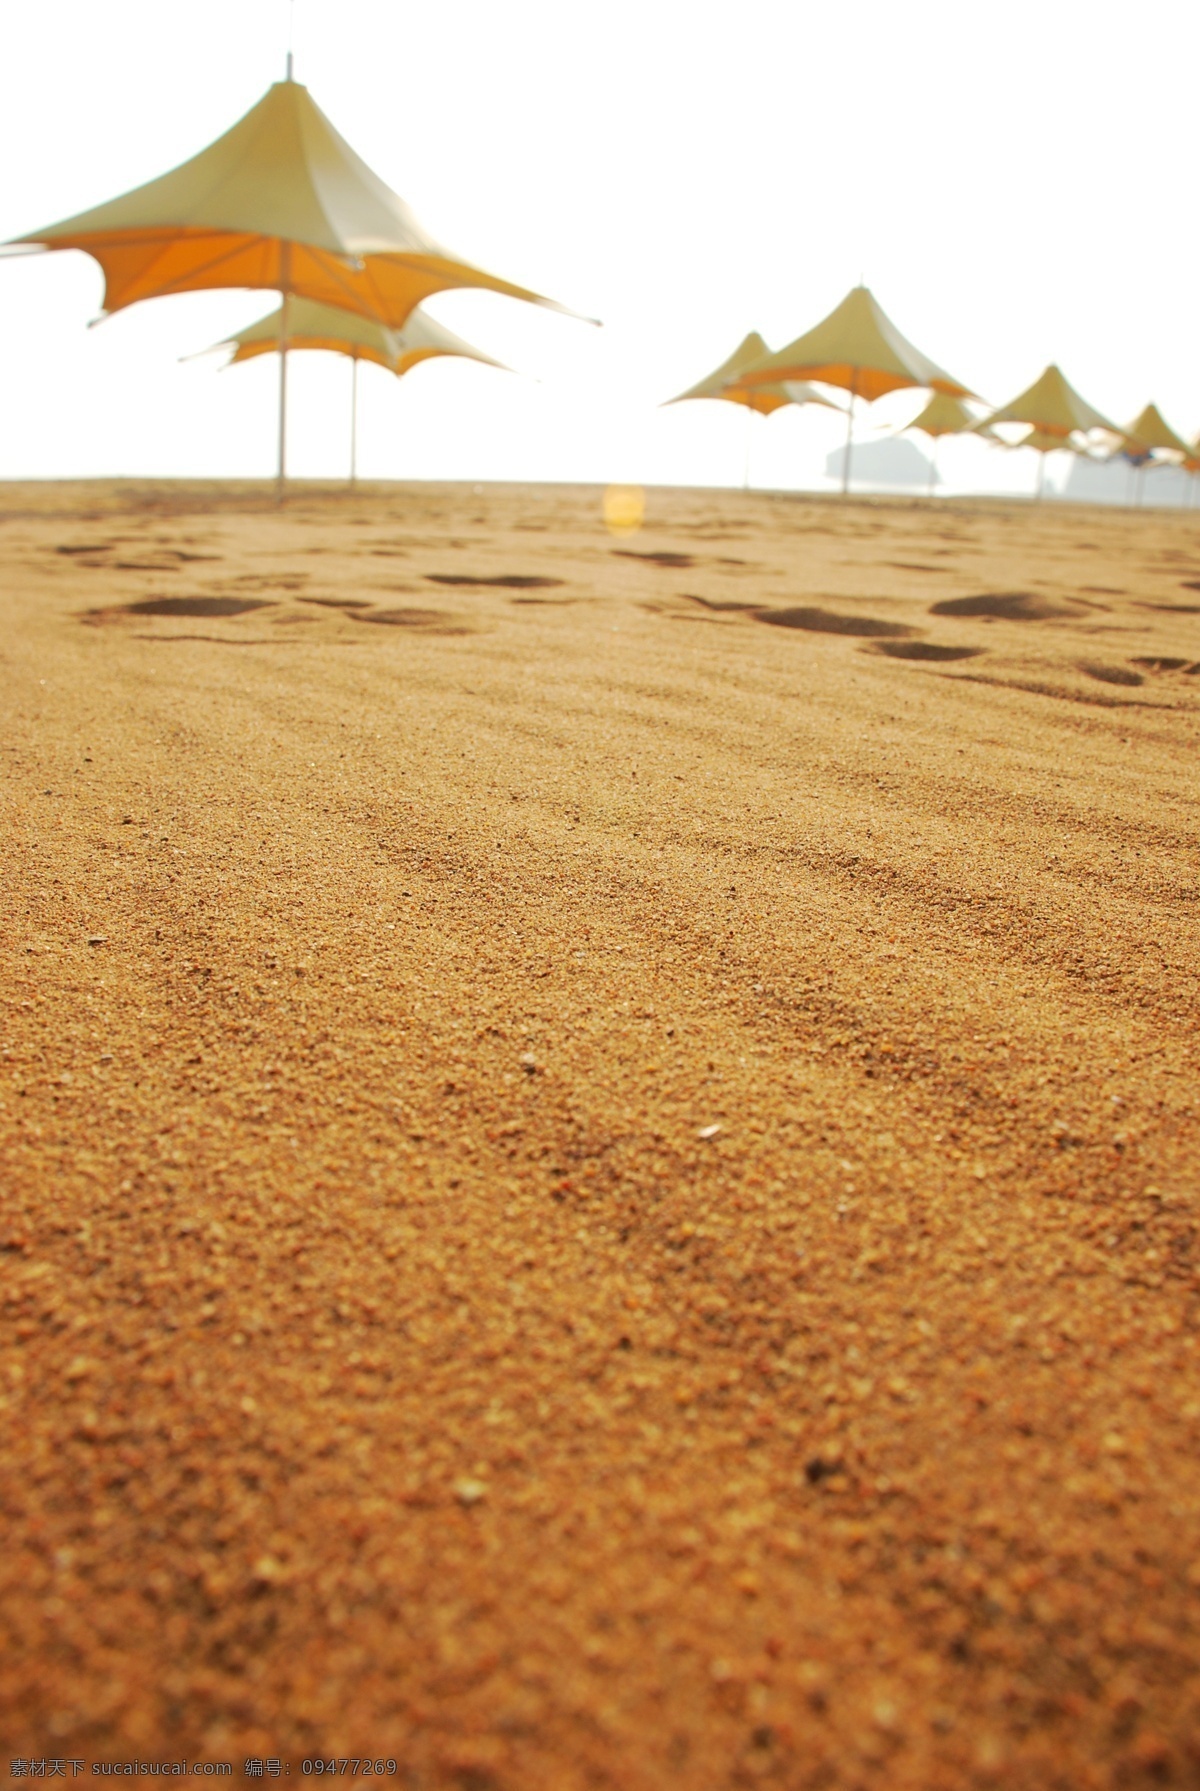 大连 开发区 金石滩 黄金海岸 大海 沙滩 遮阳伞 金黄色 细沙 背景 大图 自然景观 自然风景 摄影图库